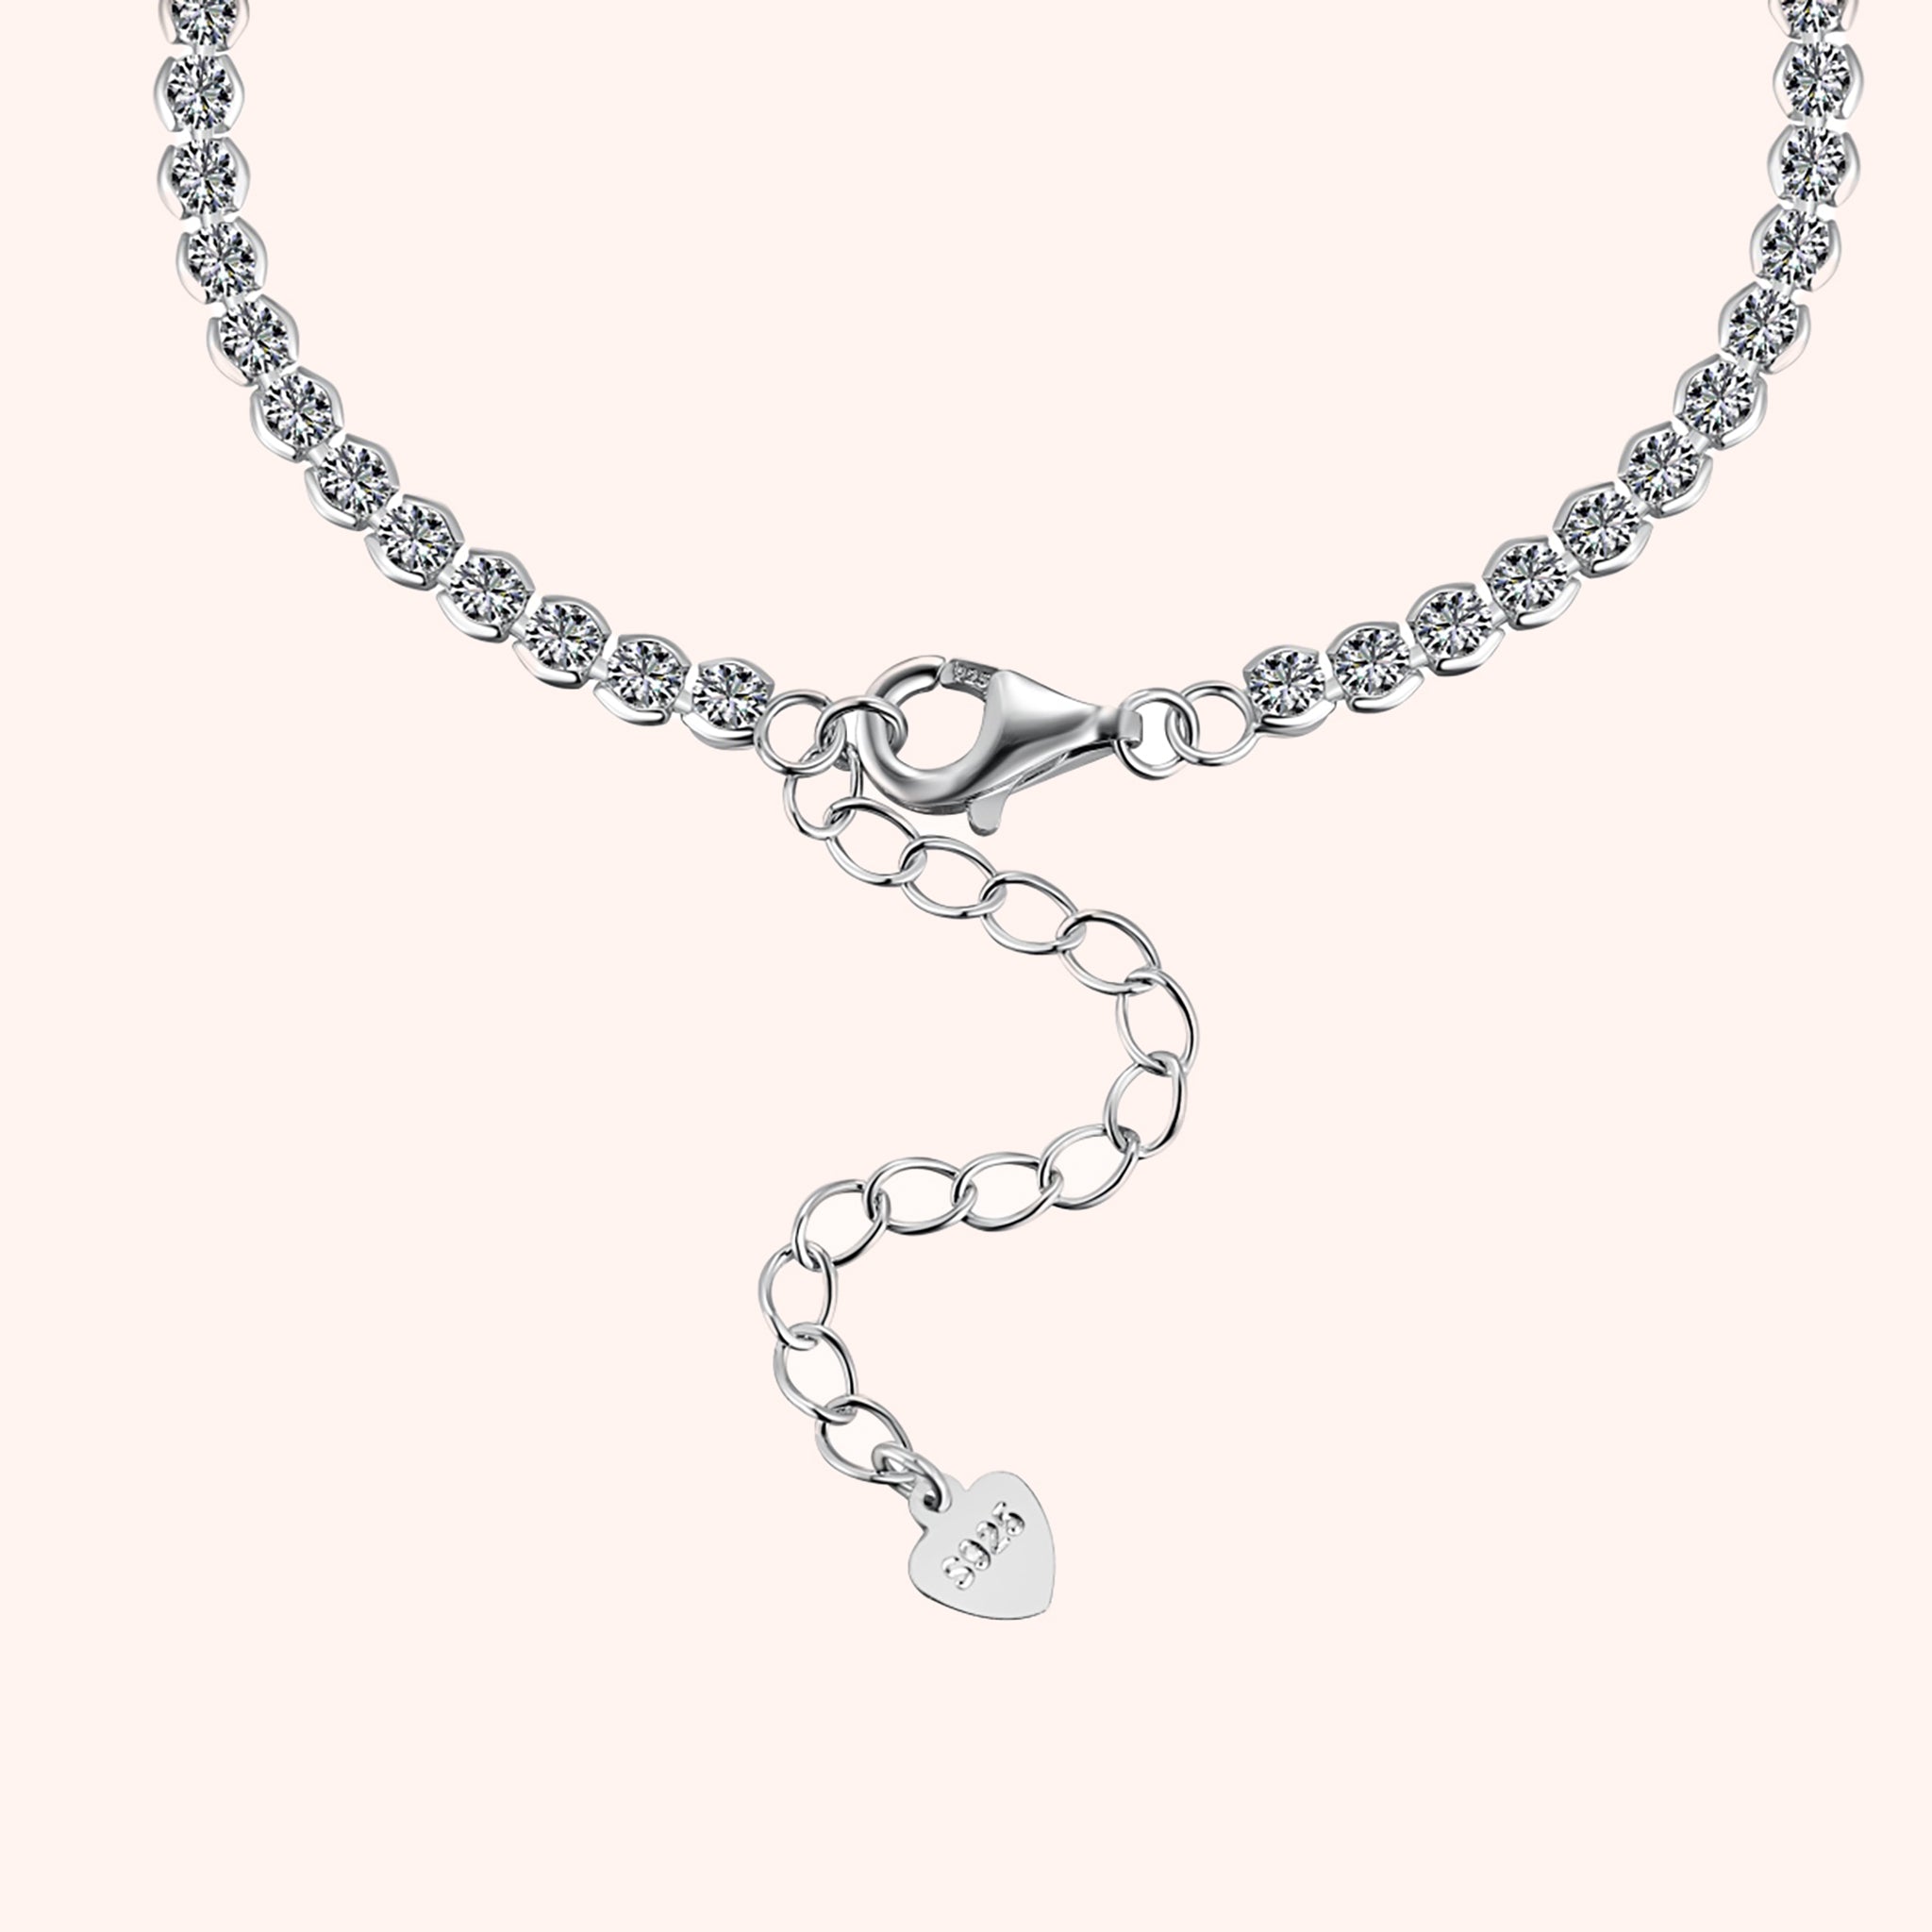 Silver Round Latest Design Tennis Bracelet